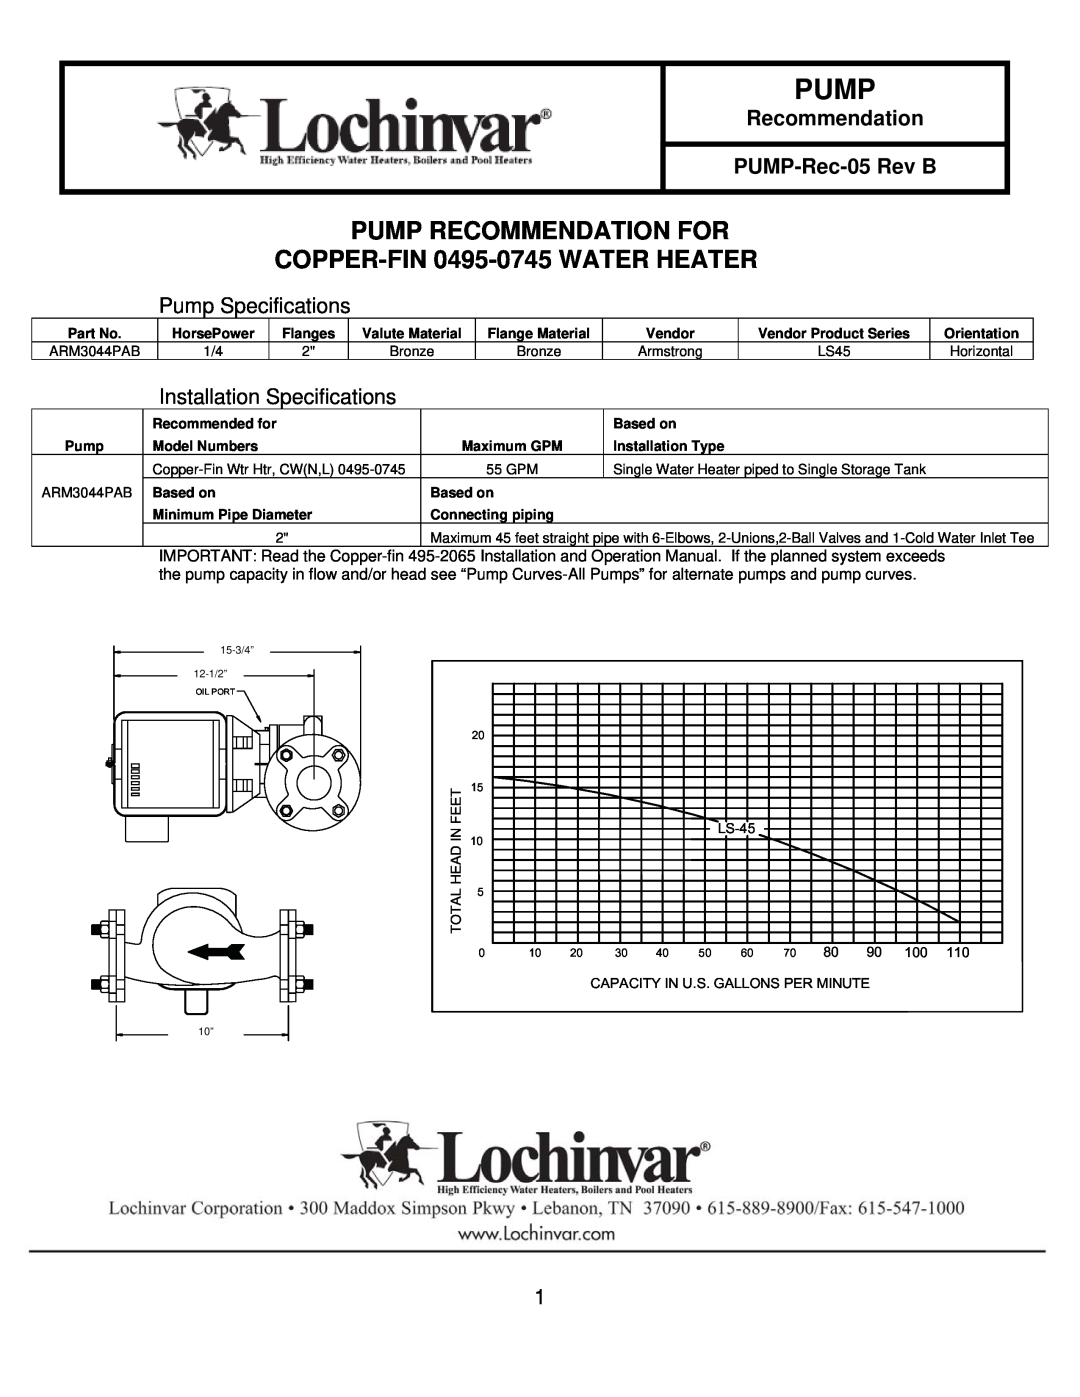 Lochinvar PUMP-REC-05 REV B specifications Recommendation PUMP-Rec-05Rev B, Pump Specifications, Feet, LS-45, Head 